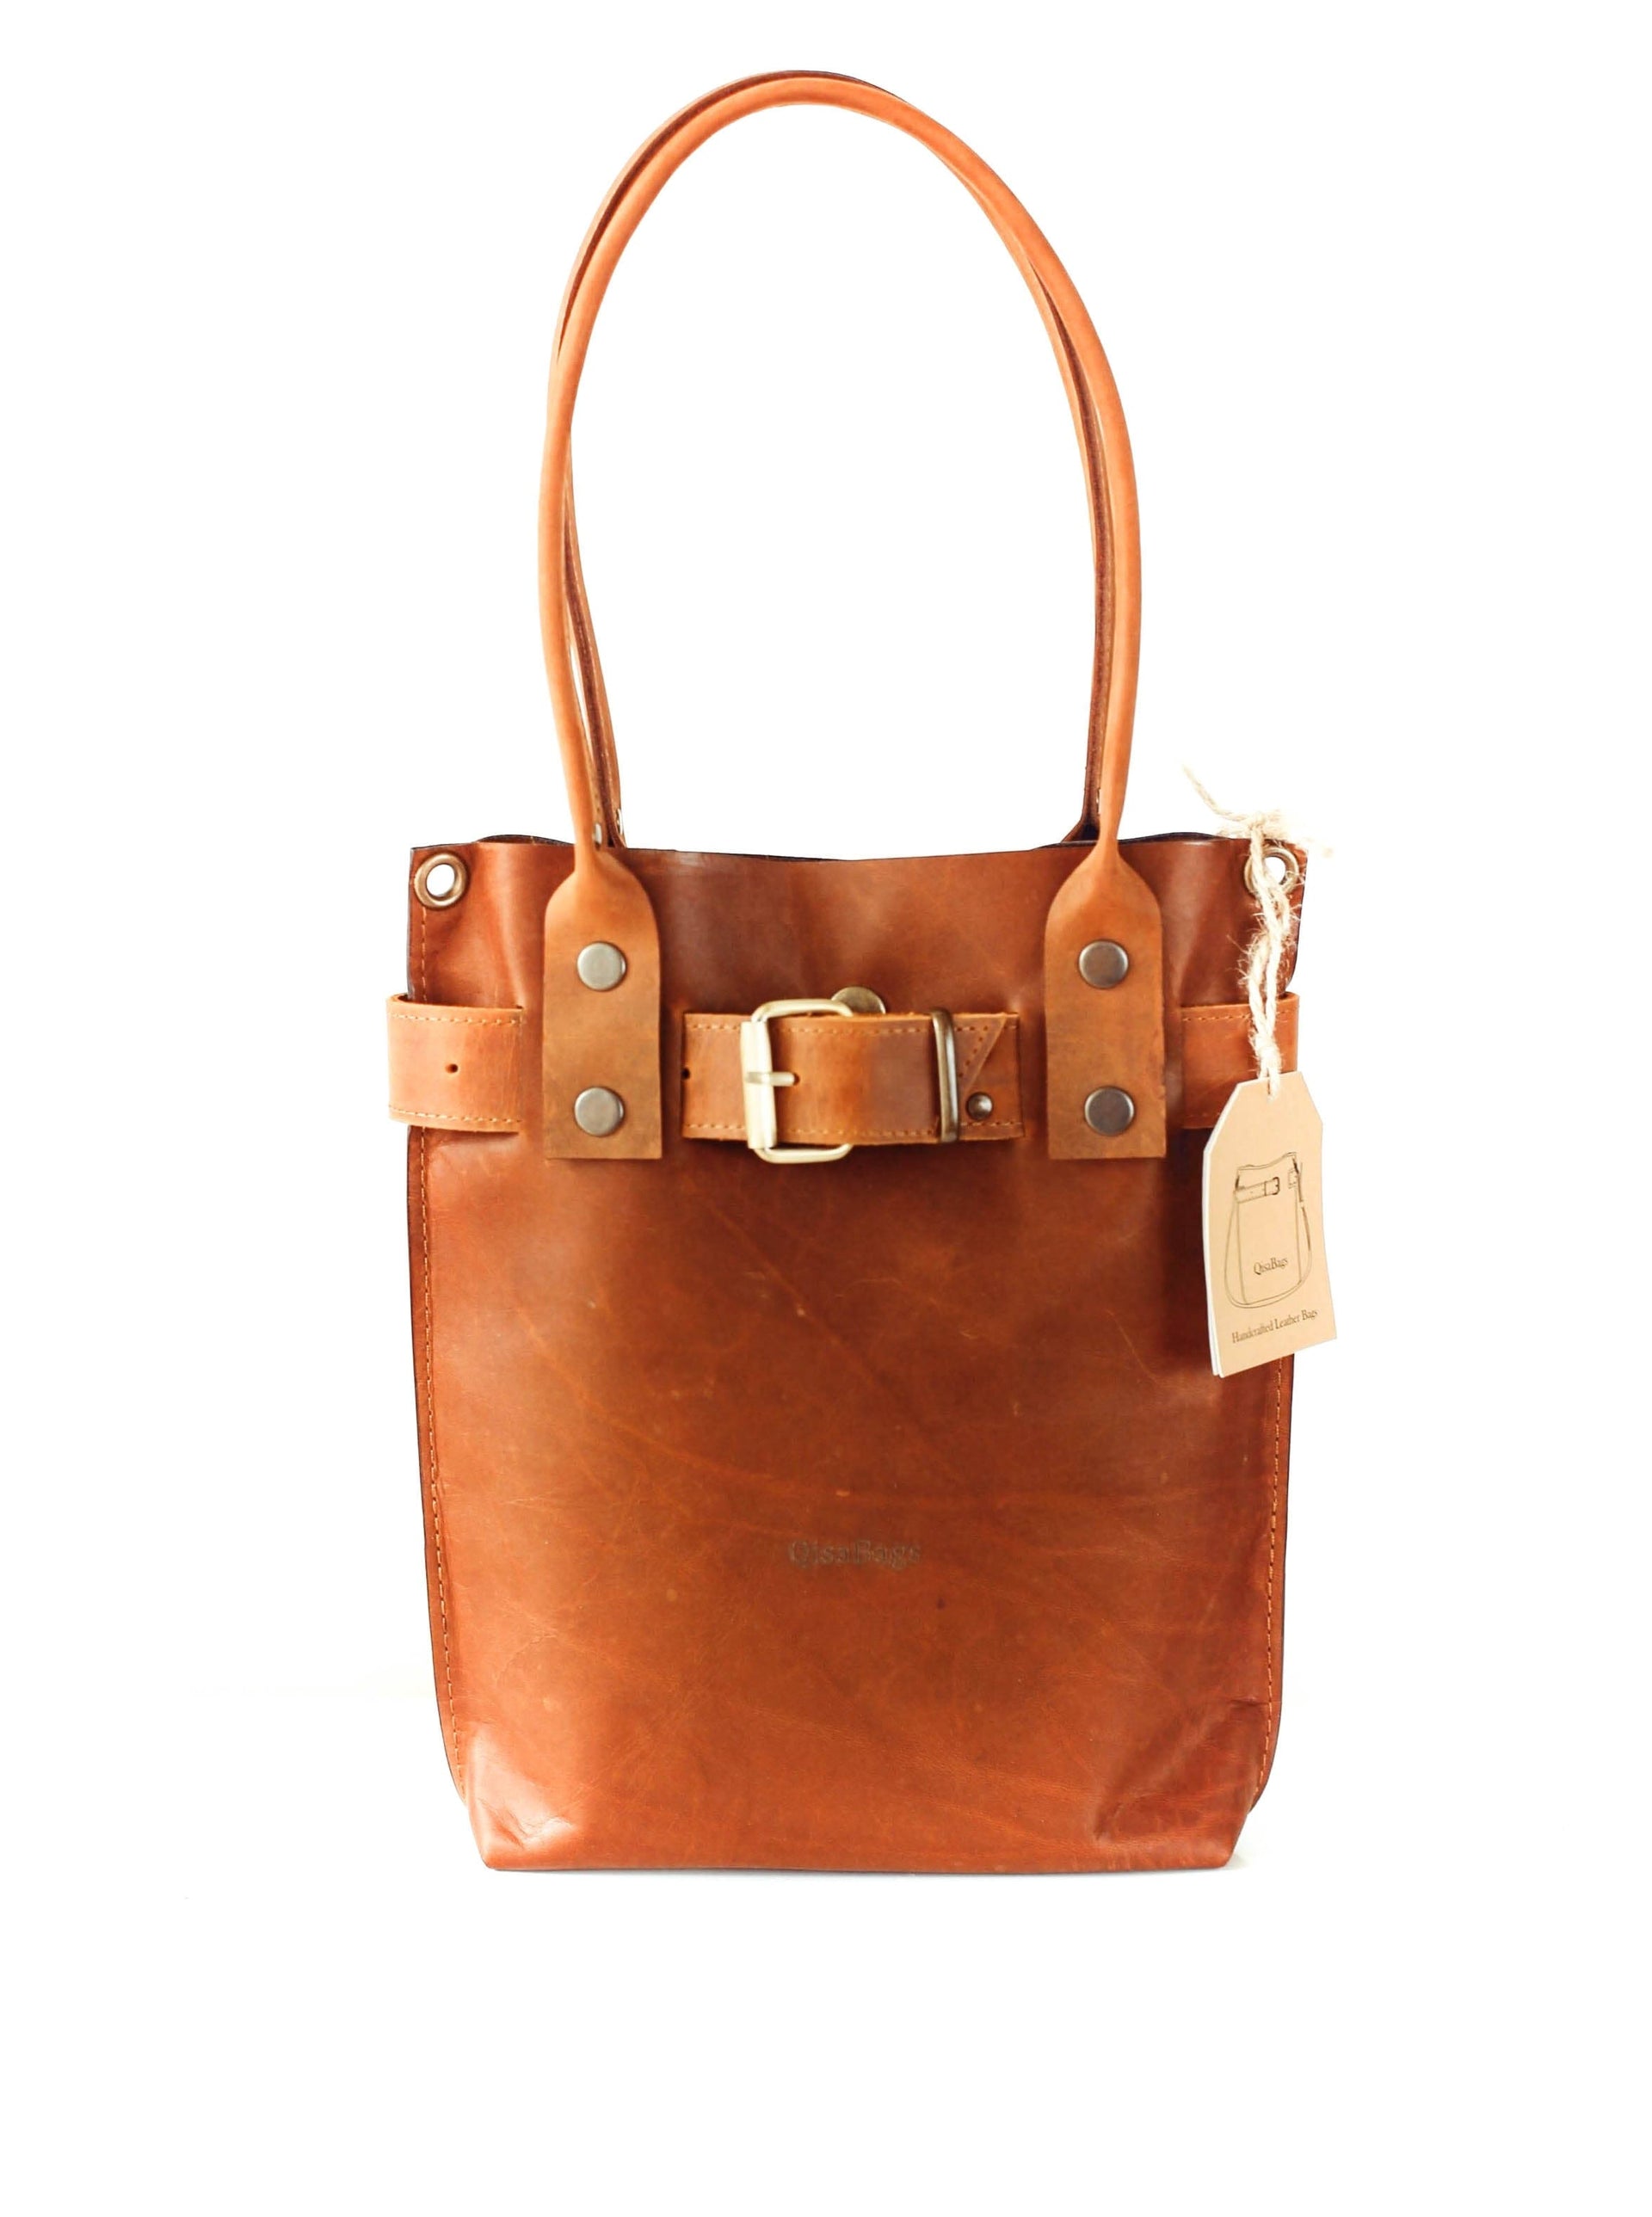 Small brown leather handbag